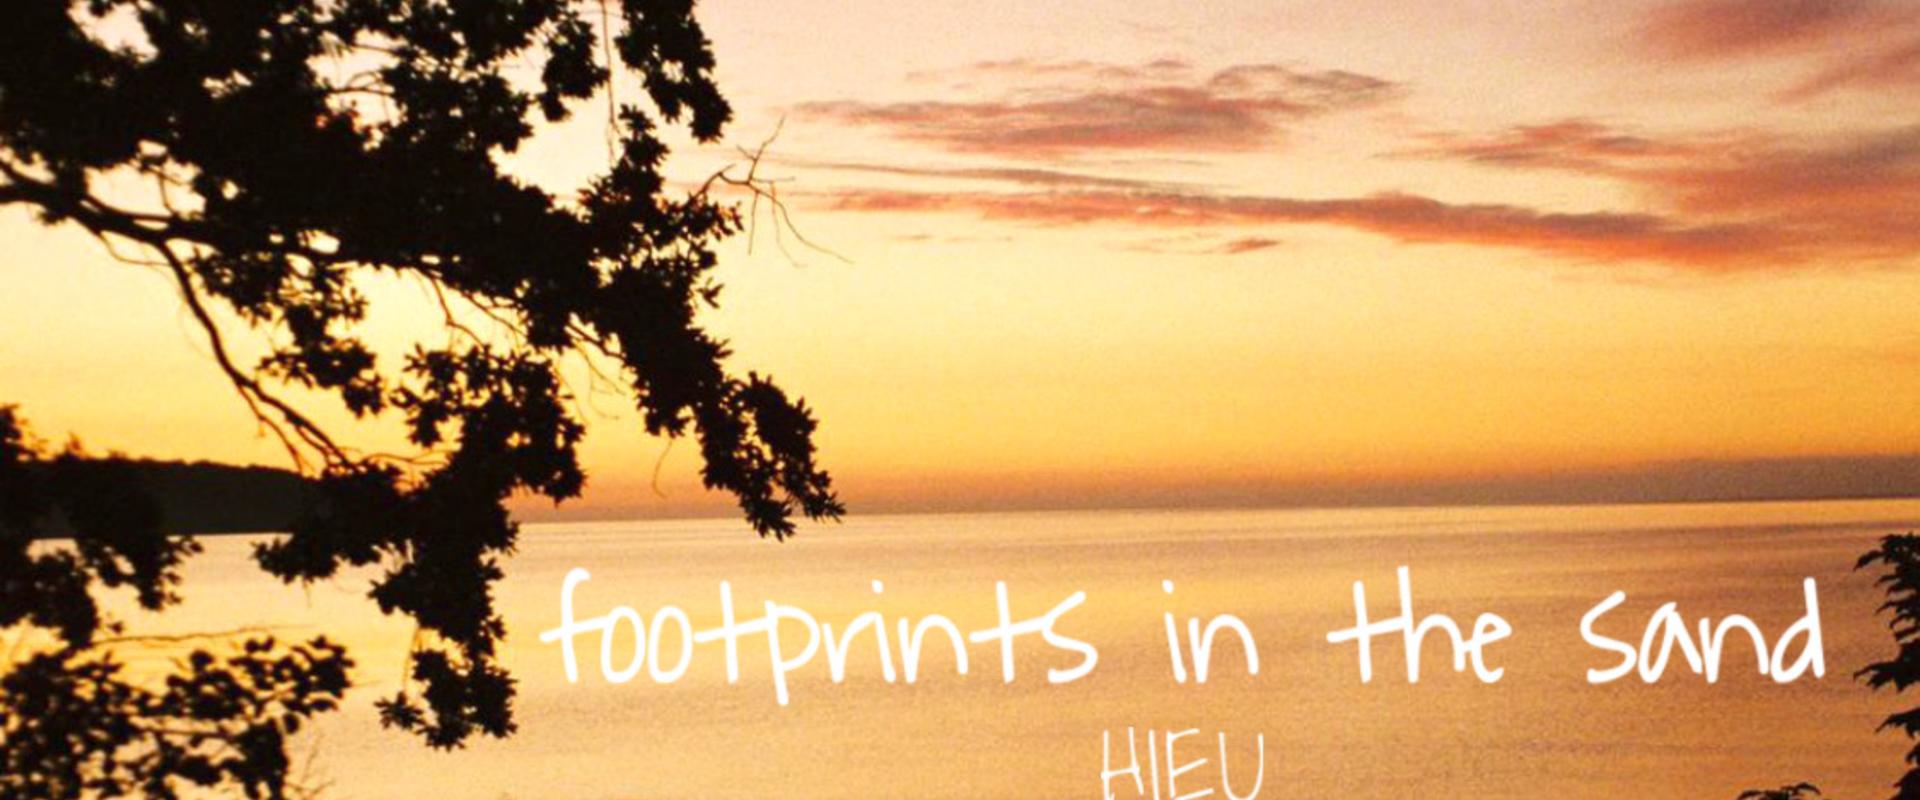 CD Neuerscheinung: HIEU - Footprints in the Sand